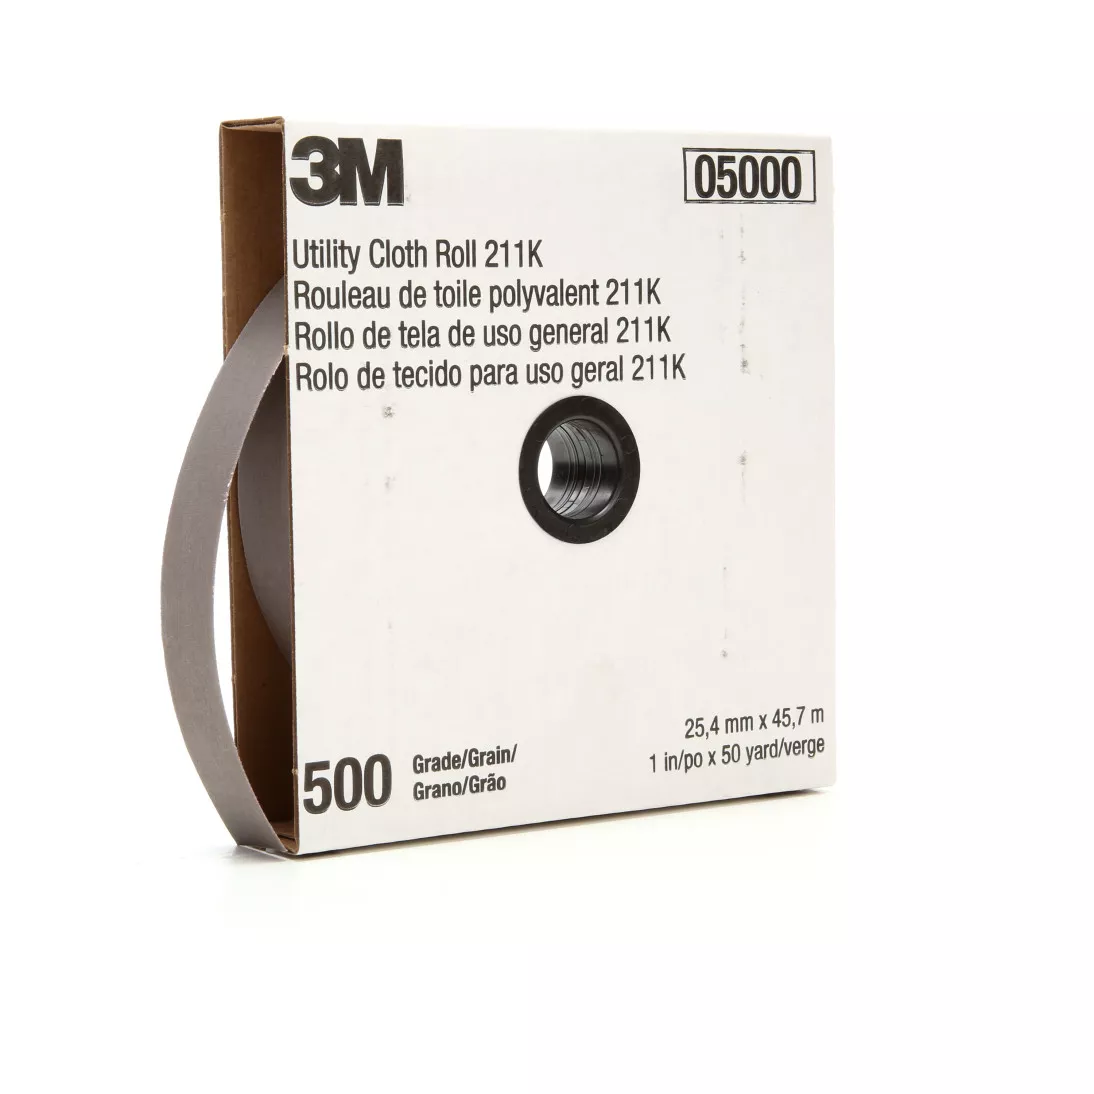 3M™ Utility Cloth Roll 211K, 500 J-weight, 1-1/2 in x 50 yd, 5 ea/Case